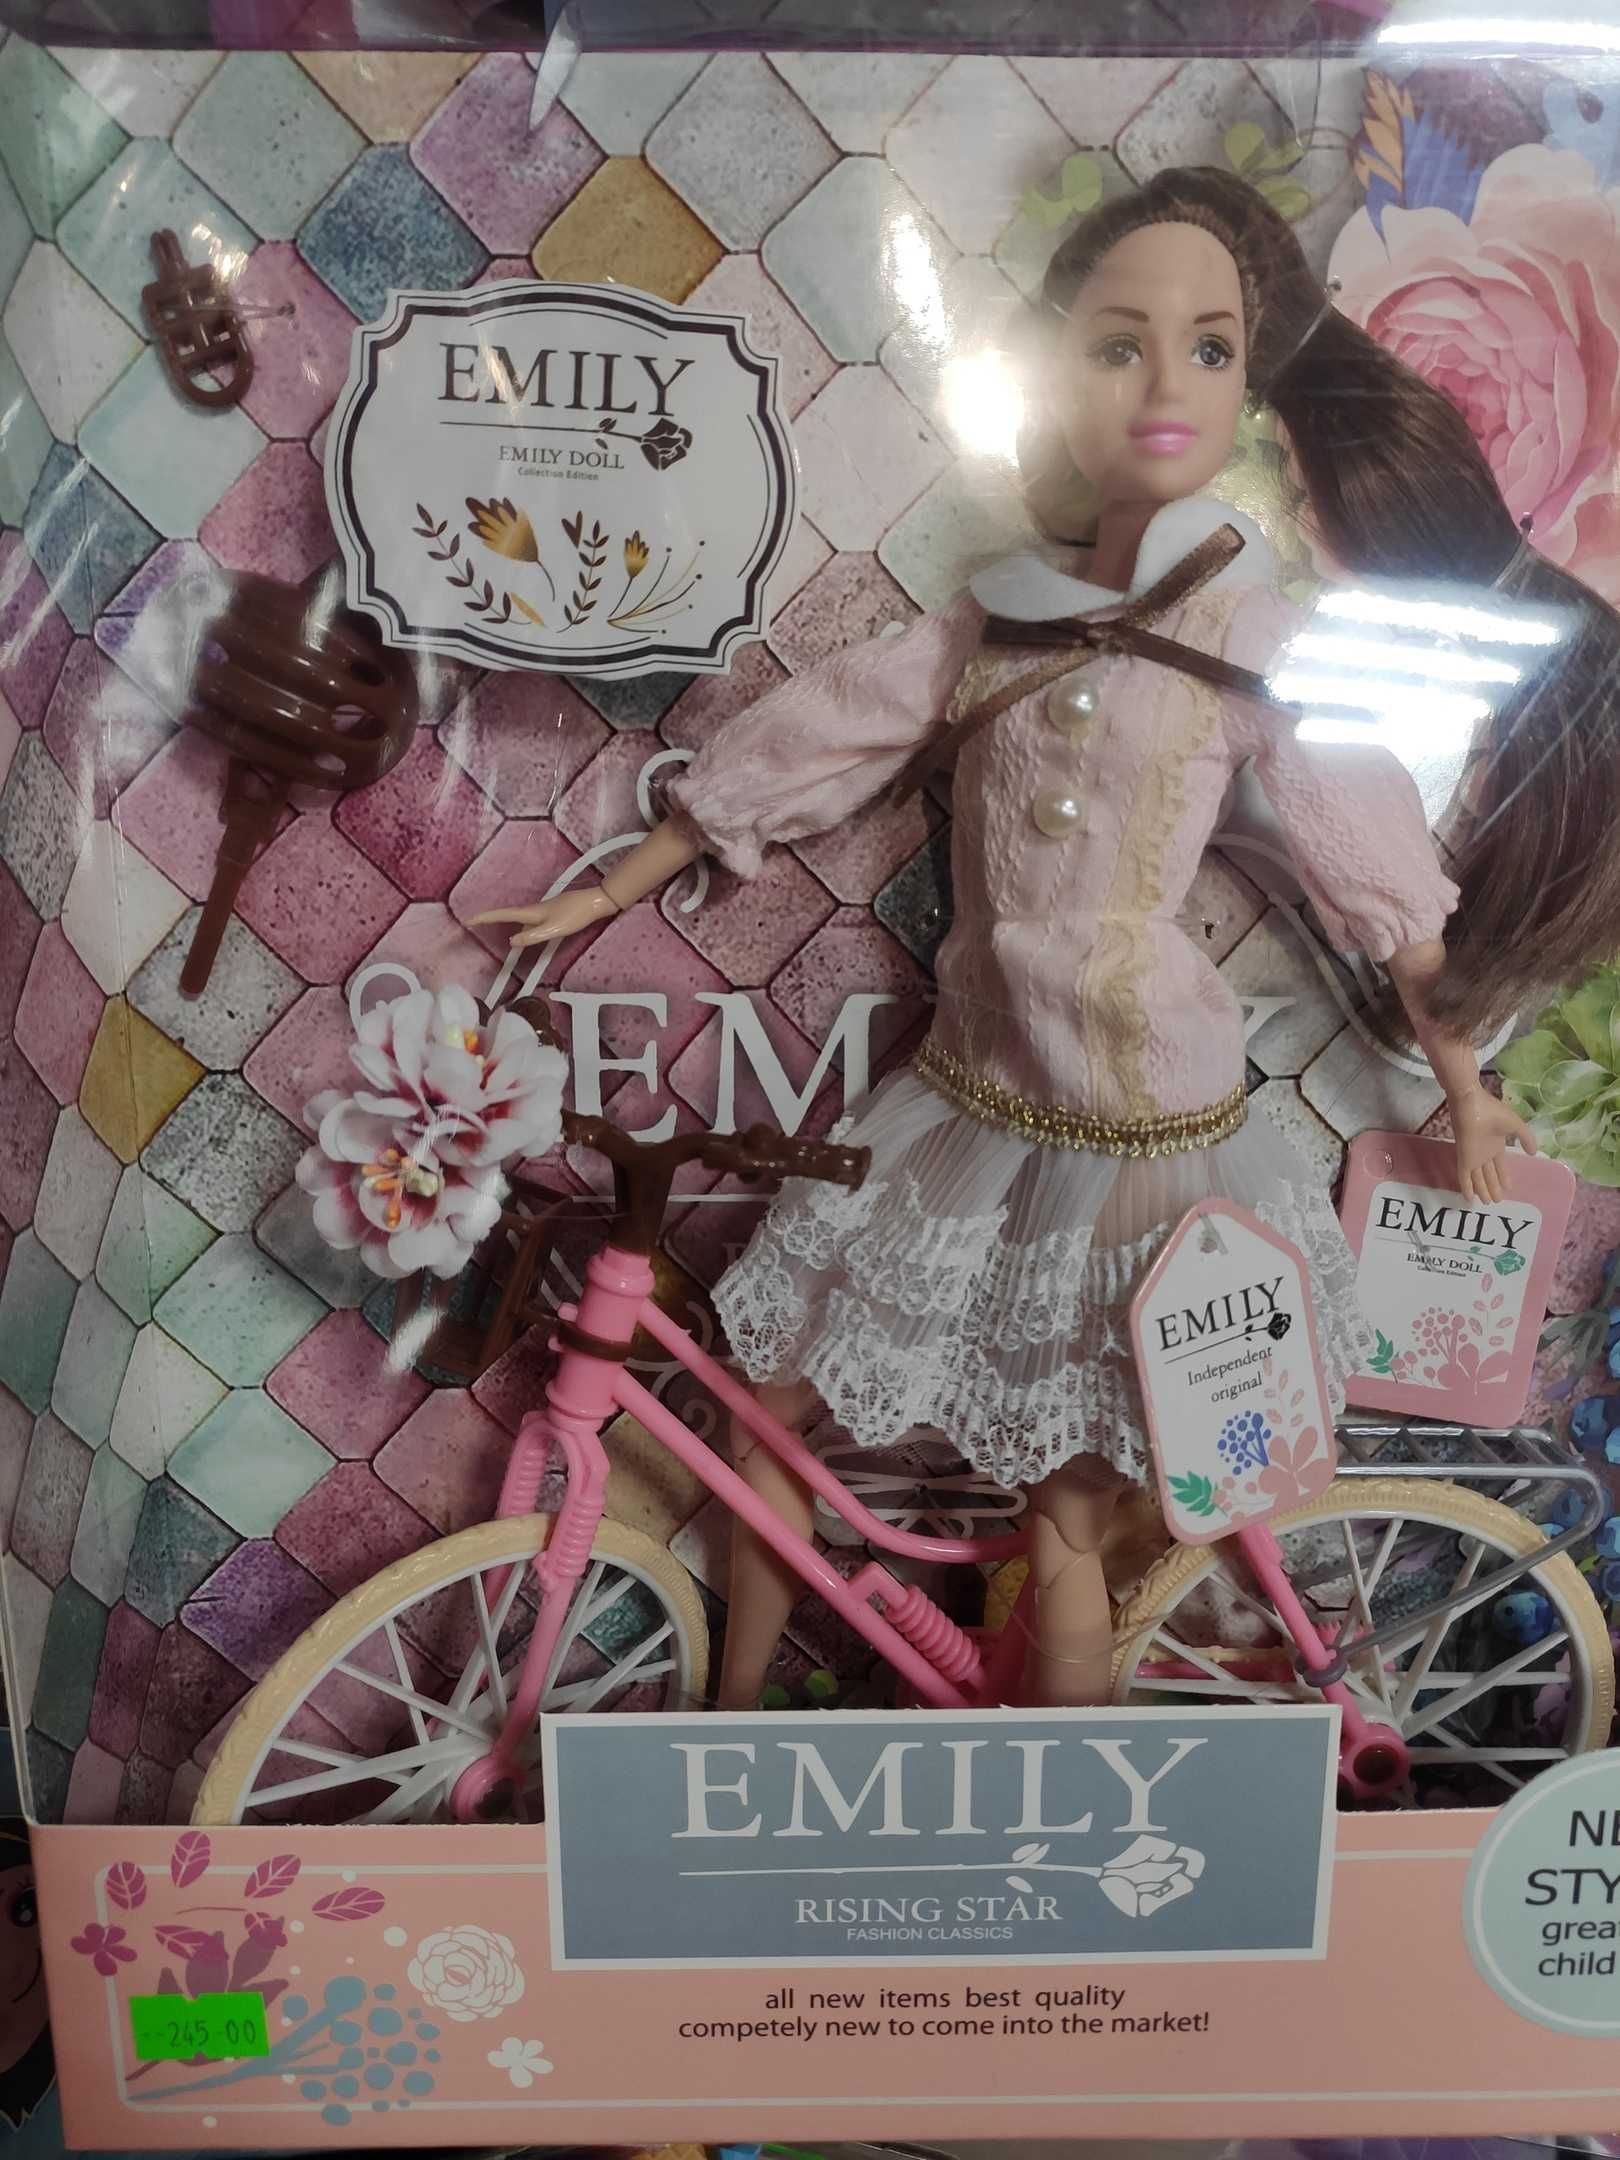 Кукла Эмили с велосипедом на прогулке, 28 см Emily подарок для девочек